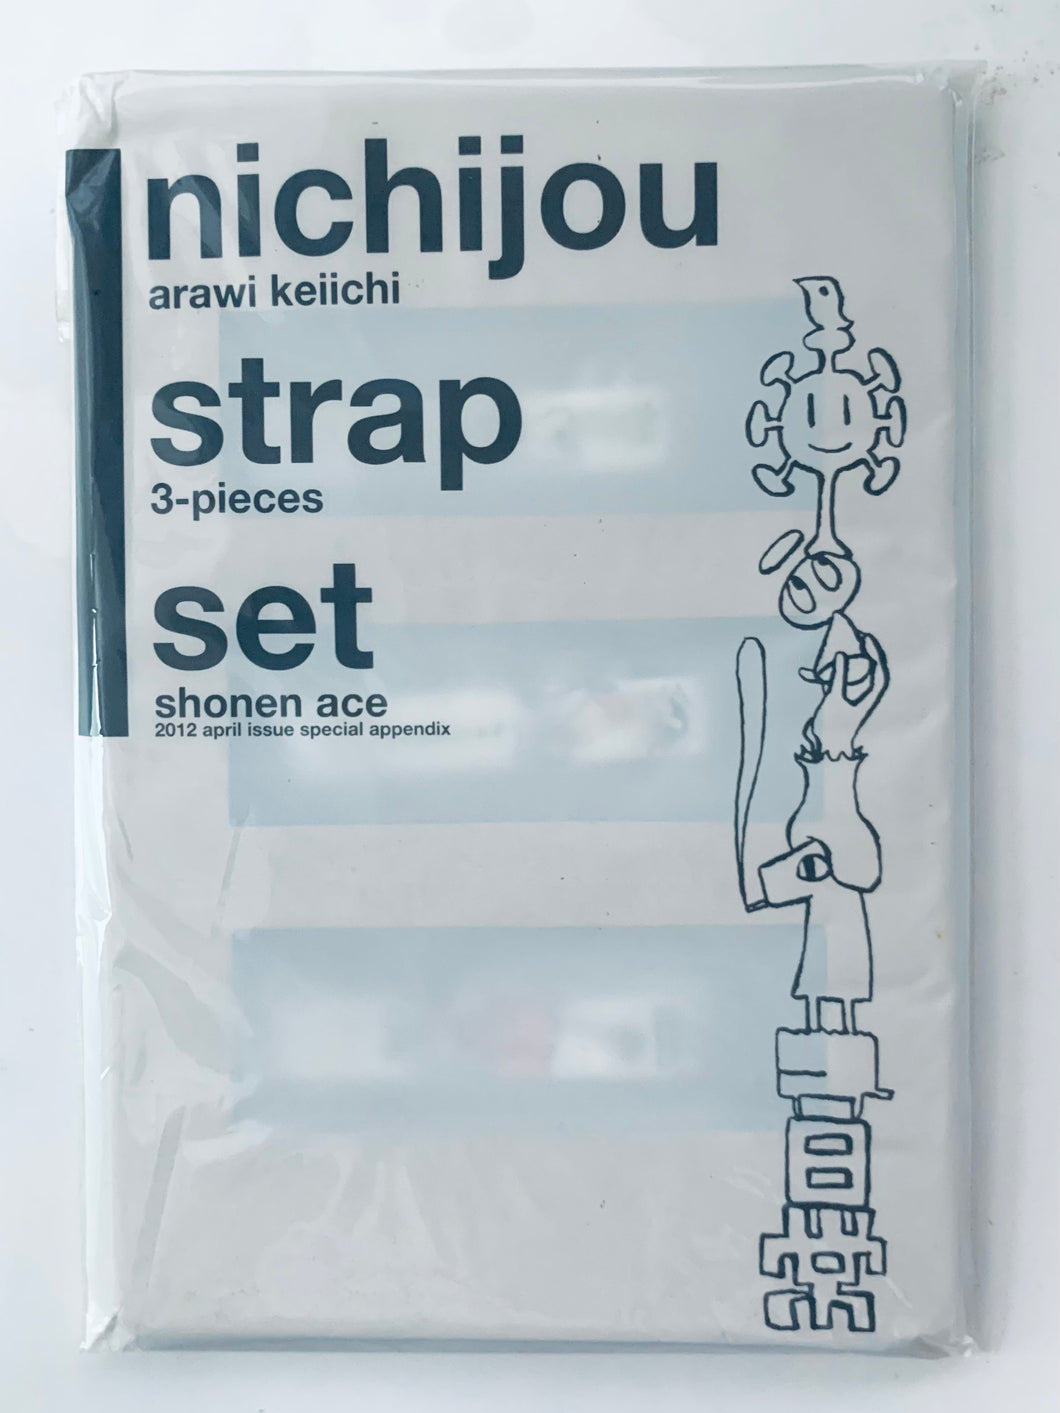 Nichijou - Shonen Ace April 2012 special appendix - Everyday strap 3- piece set